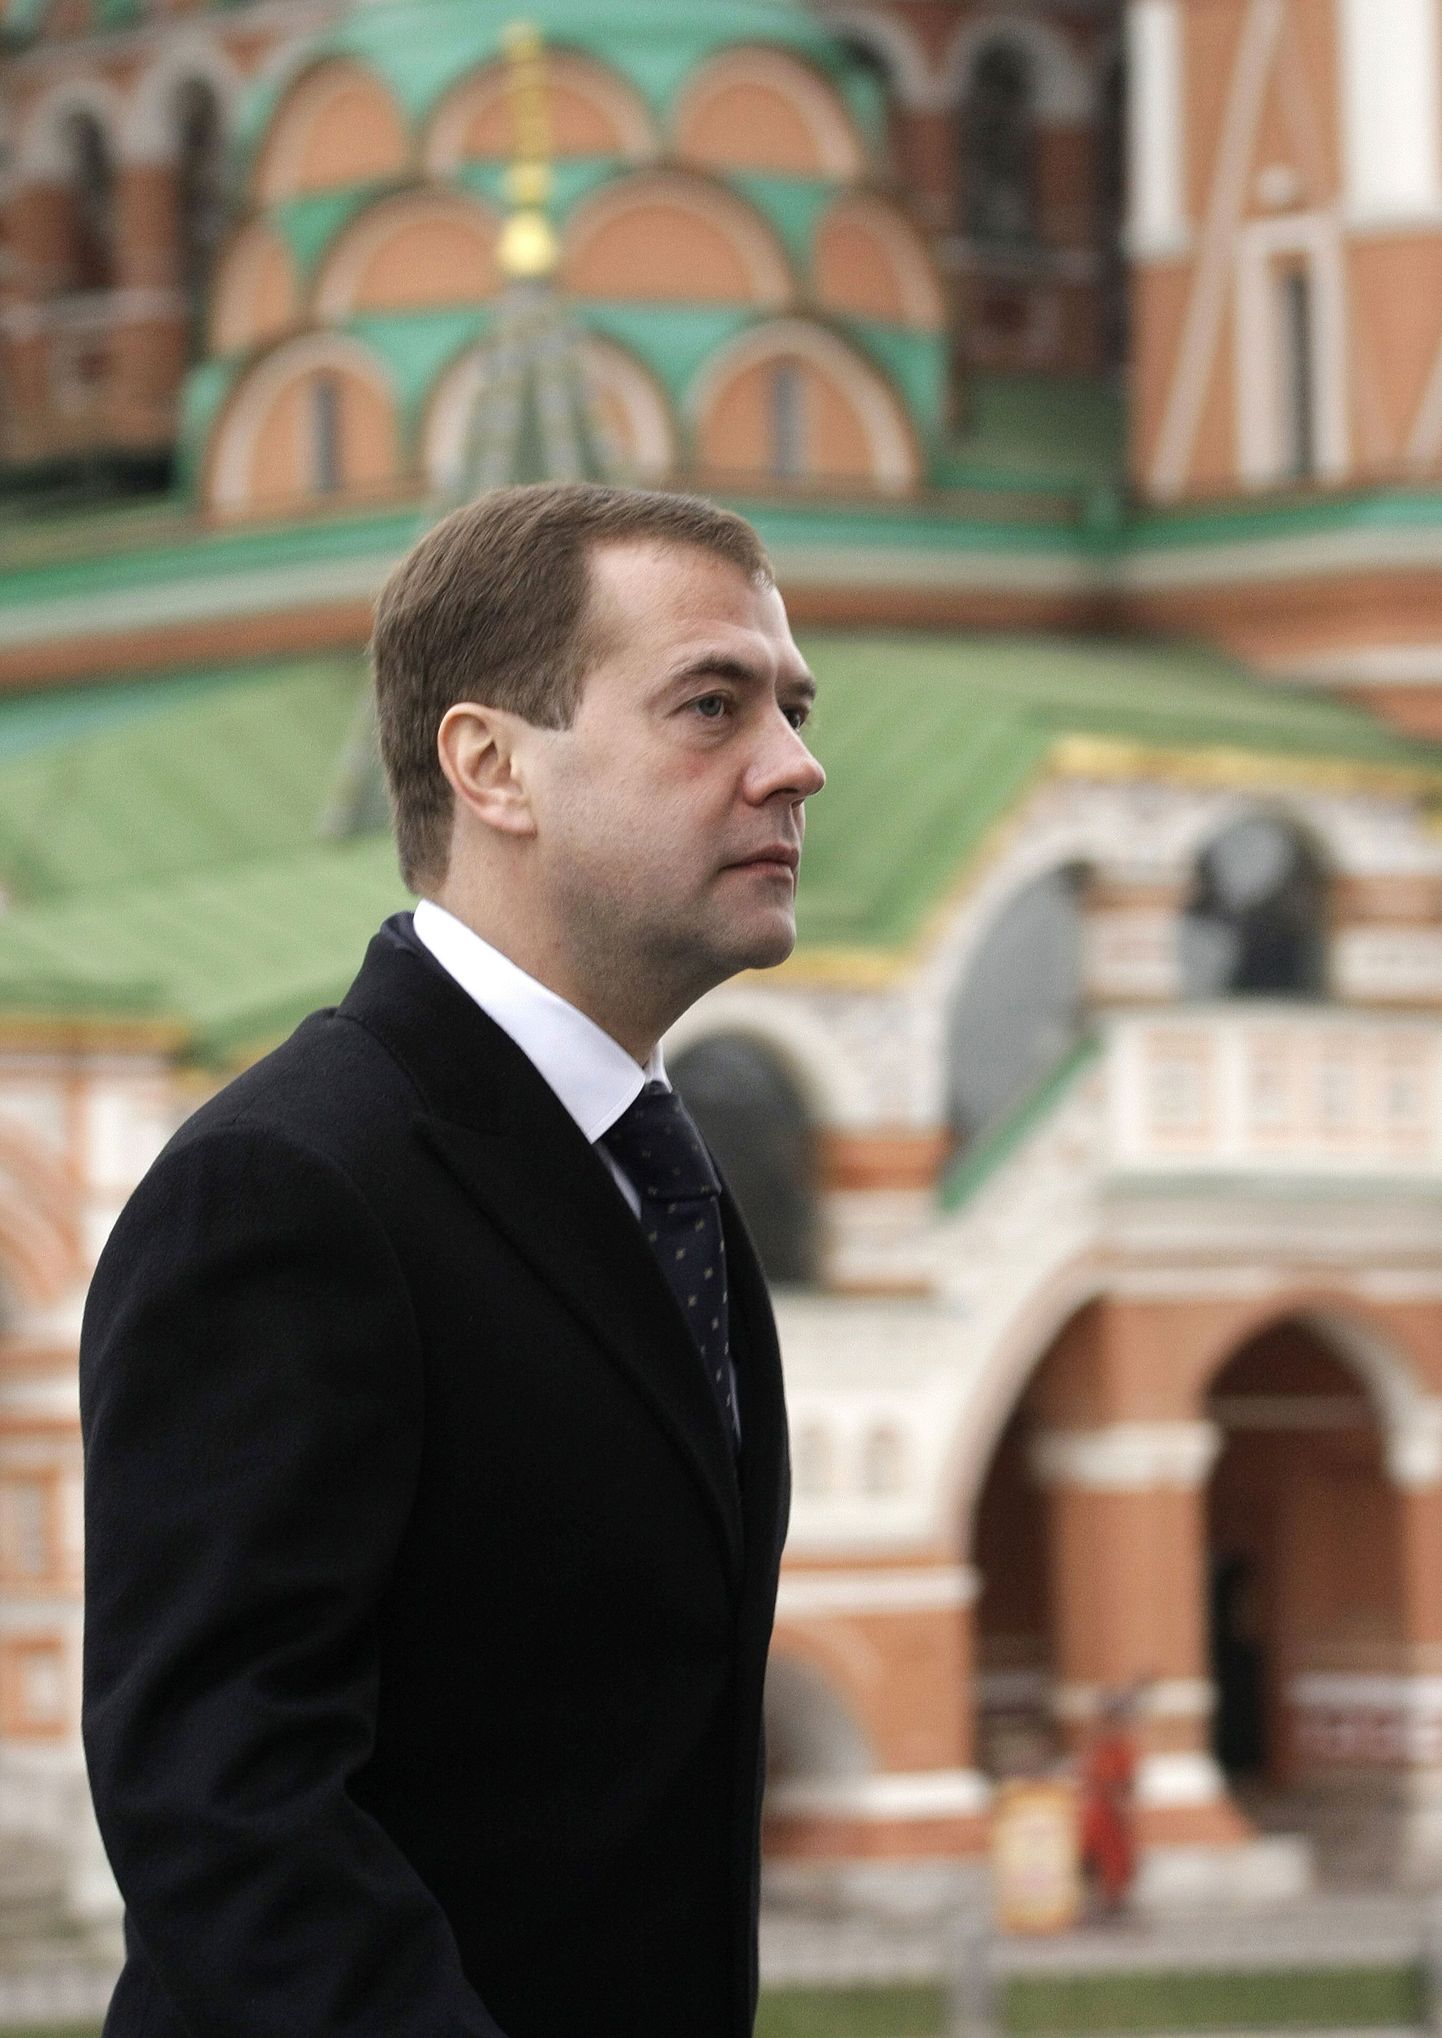 Venemaa president Dmitri Medvedev käis täna Moskva peal tähistamas rahvusliku ühtsuse päeva, mille seadis riigipühana sisse tema eelkäija Vladimir Putin.